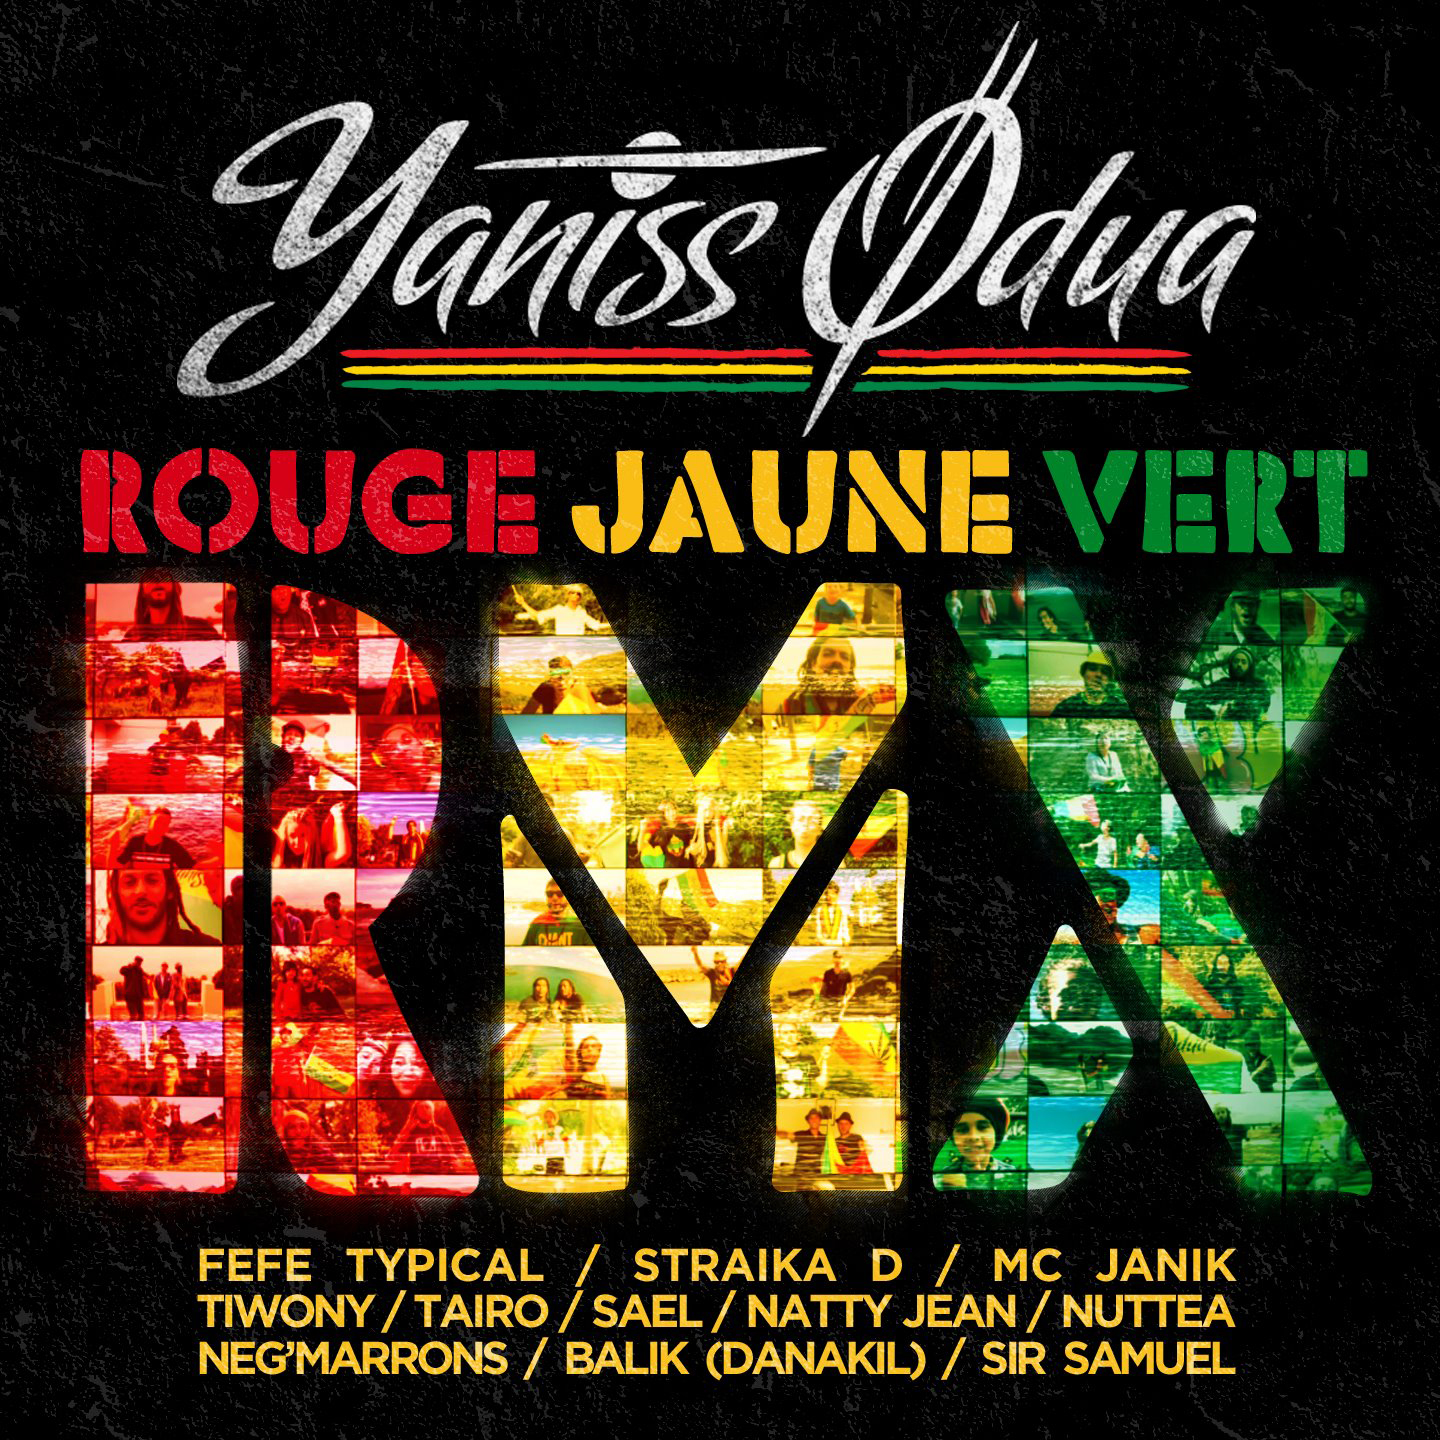 Cover du single de Yaniss Odua - Rouge Jaune Vert Remix. Réalisé par Loseou